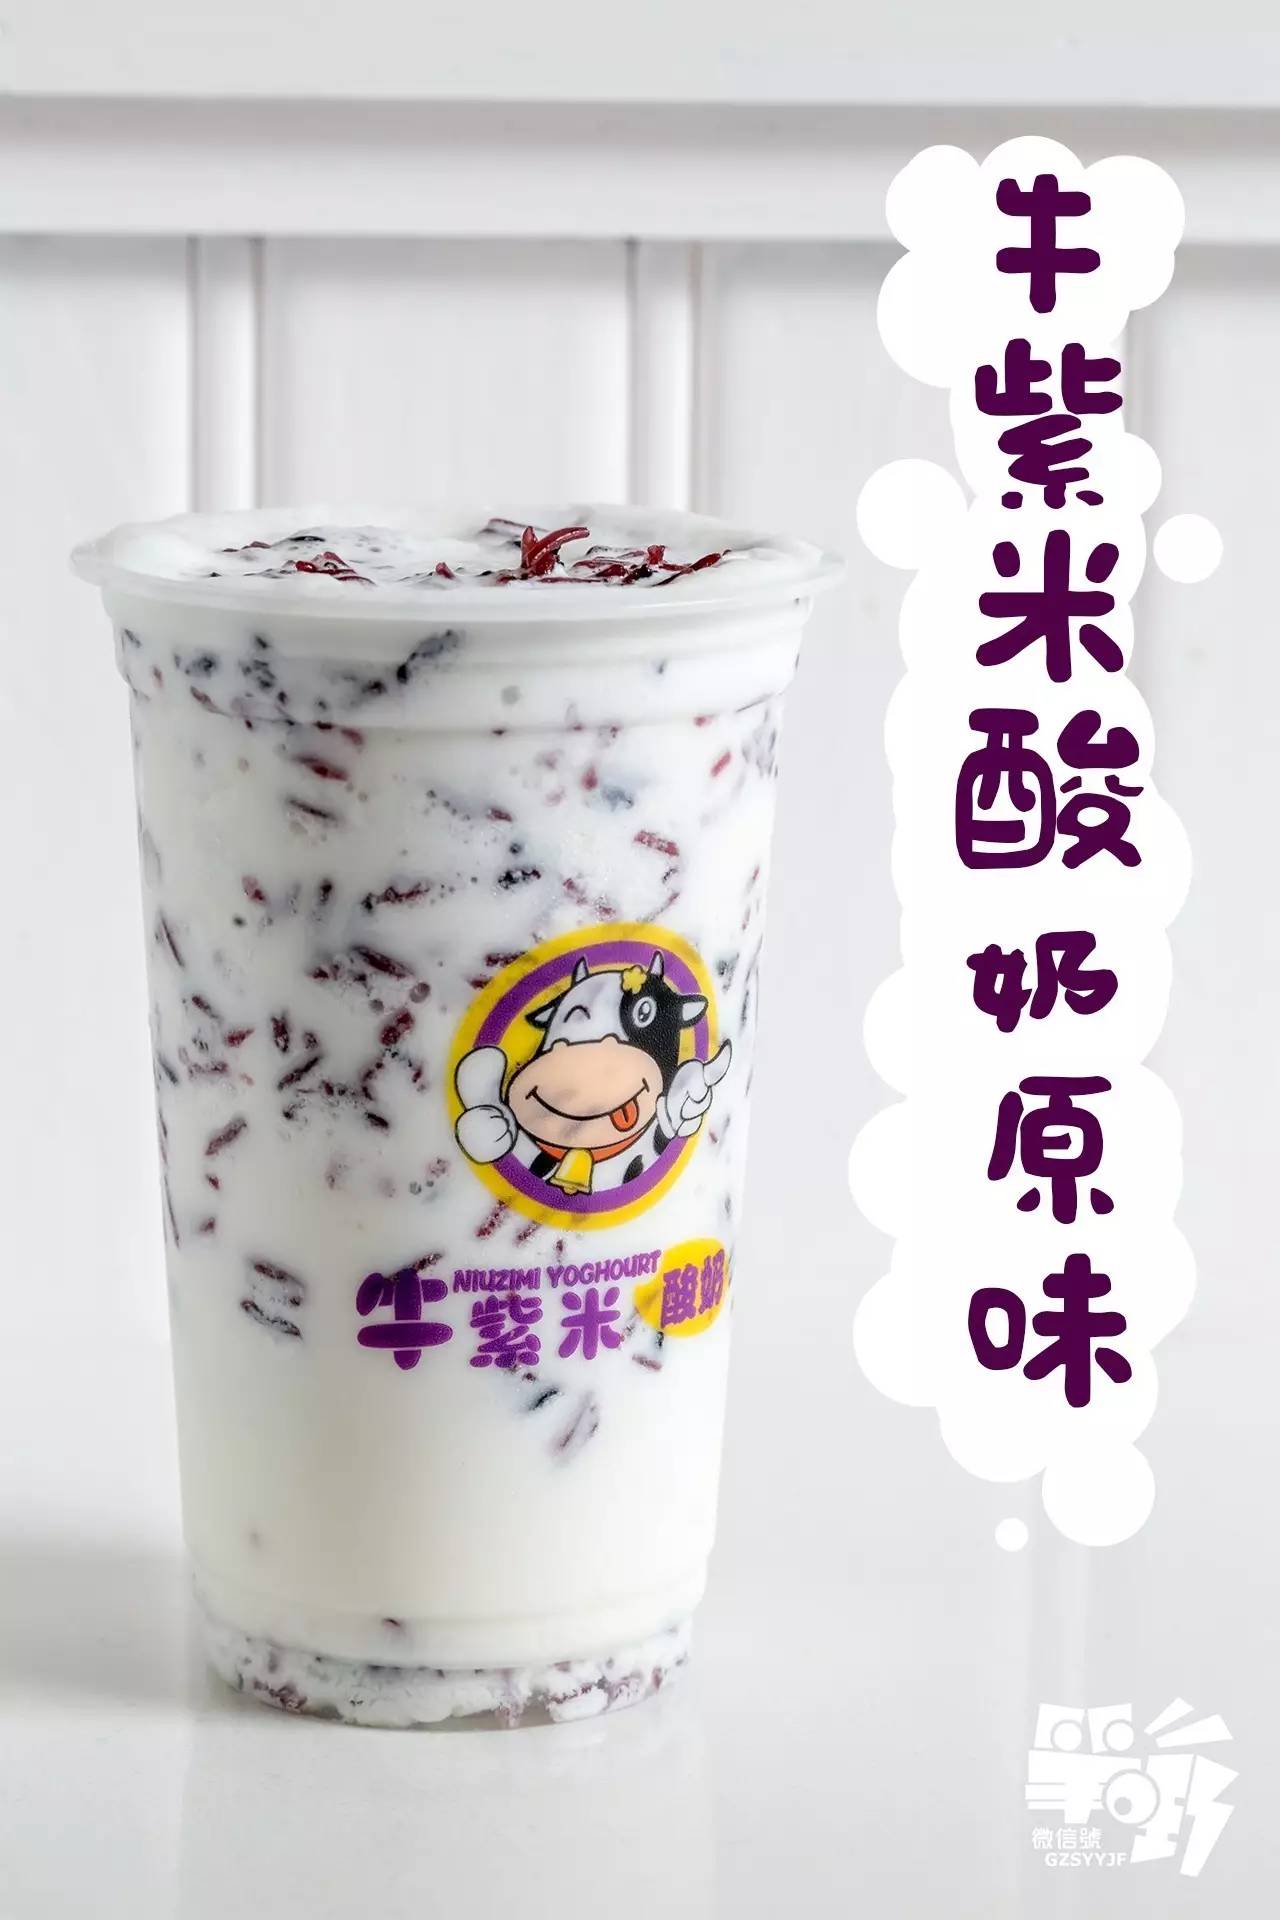 牛紫米酸奶系列